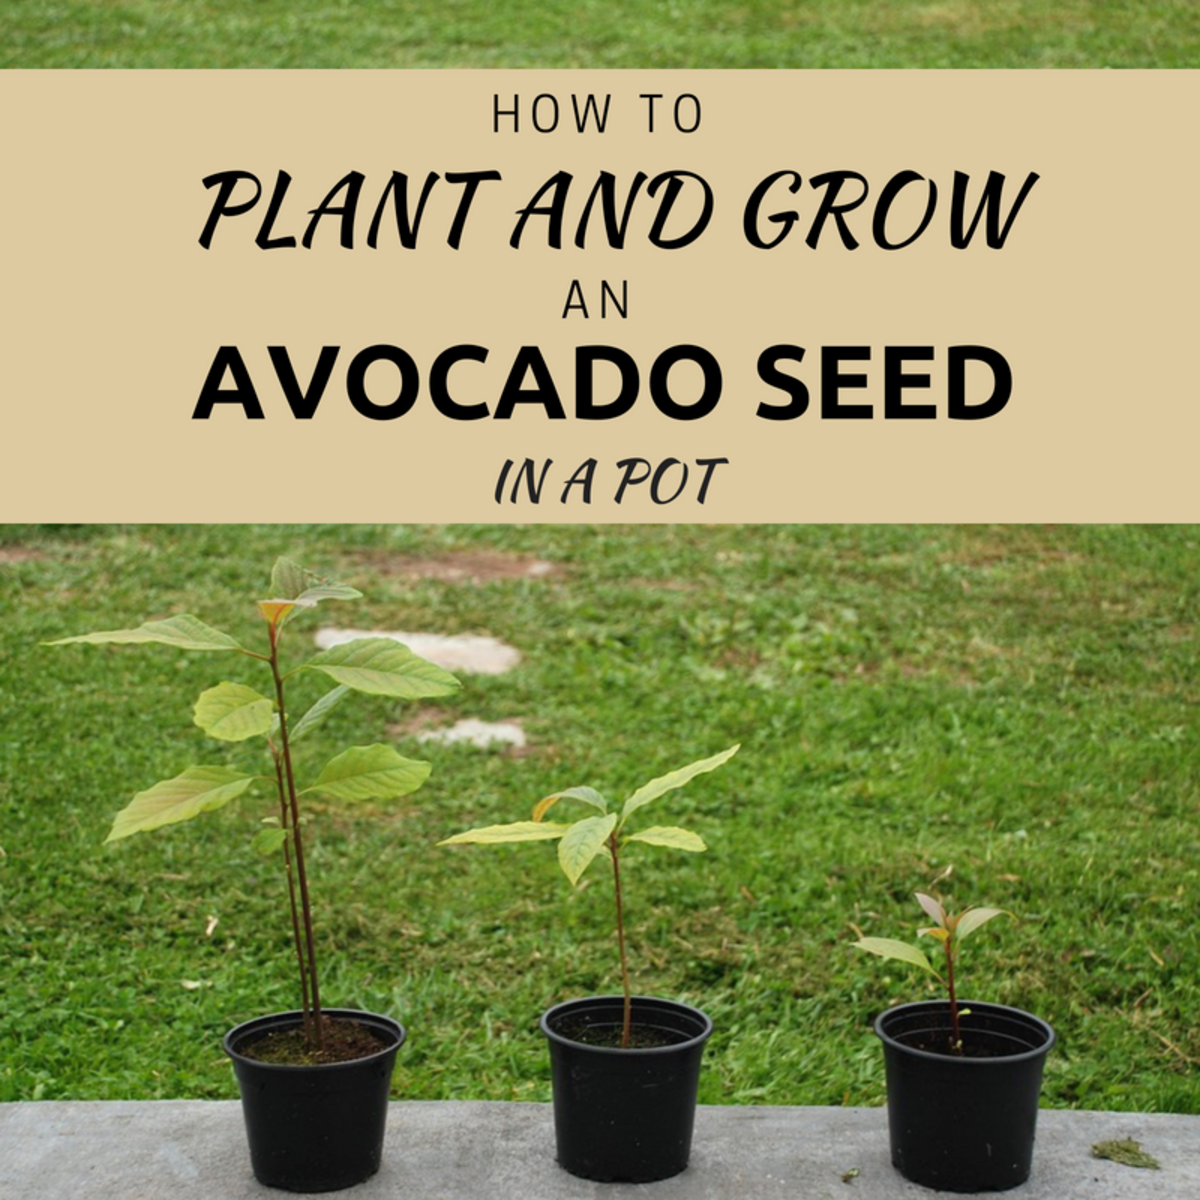 Avocado Tree Growth Chart